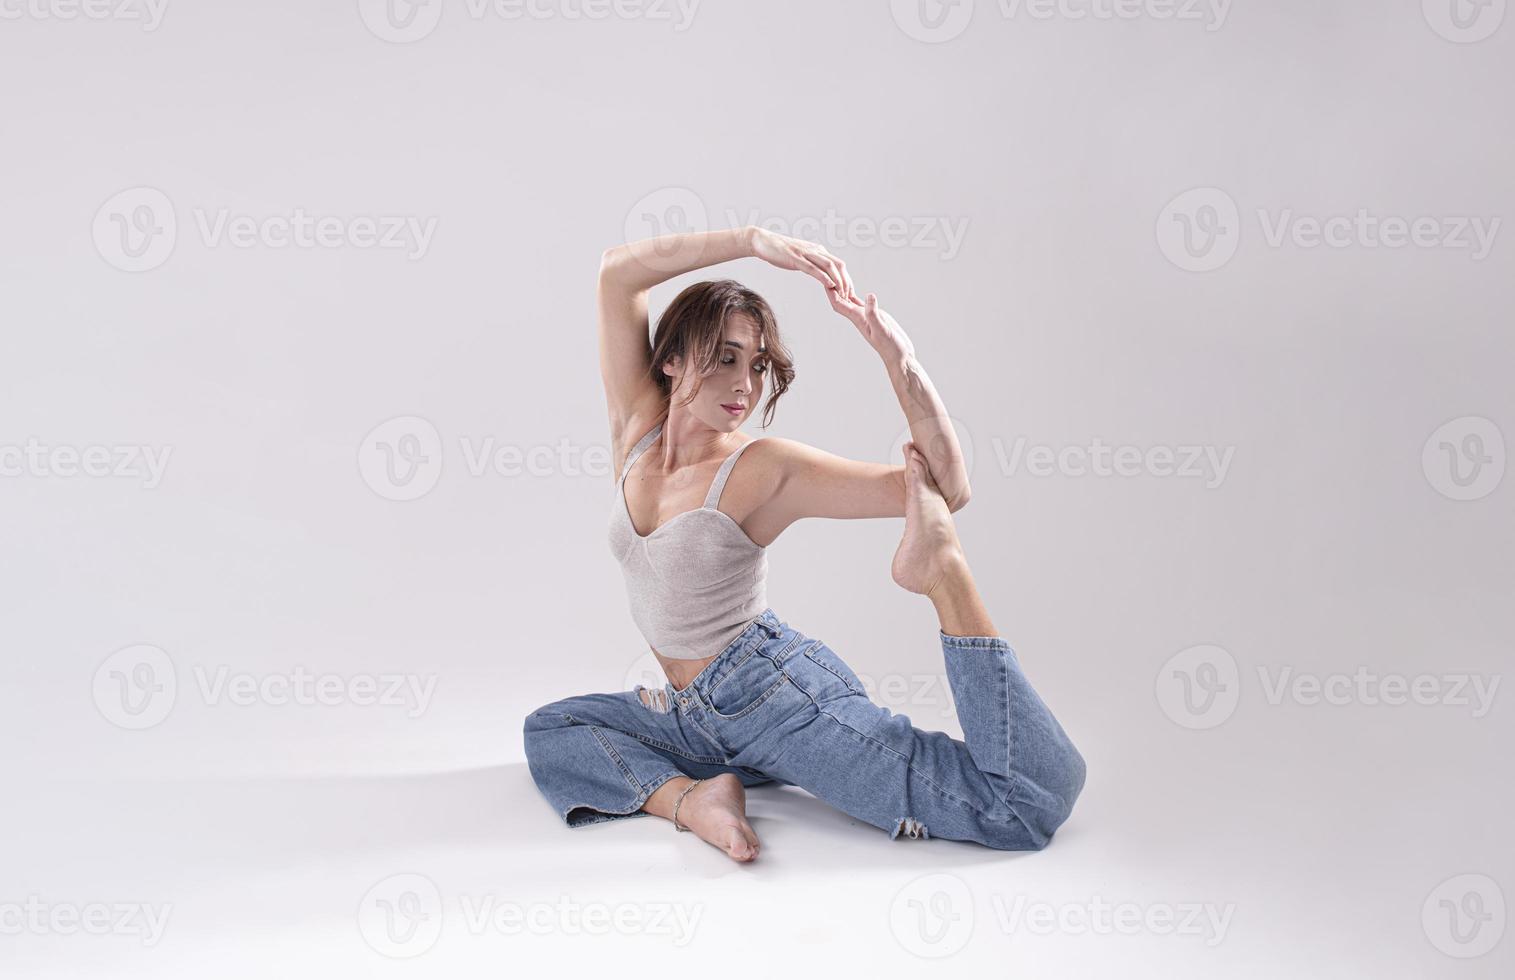 Porträt einer schönen jungen Frau mit athletischem, flexiblem Körper, die Beindehnung macht. isoliert foto